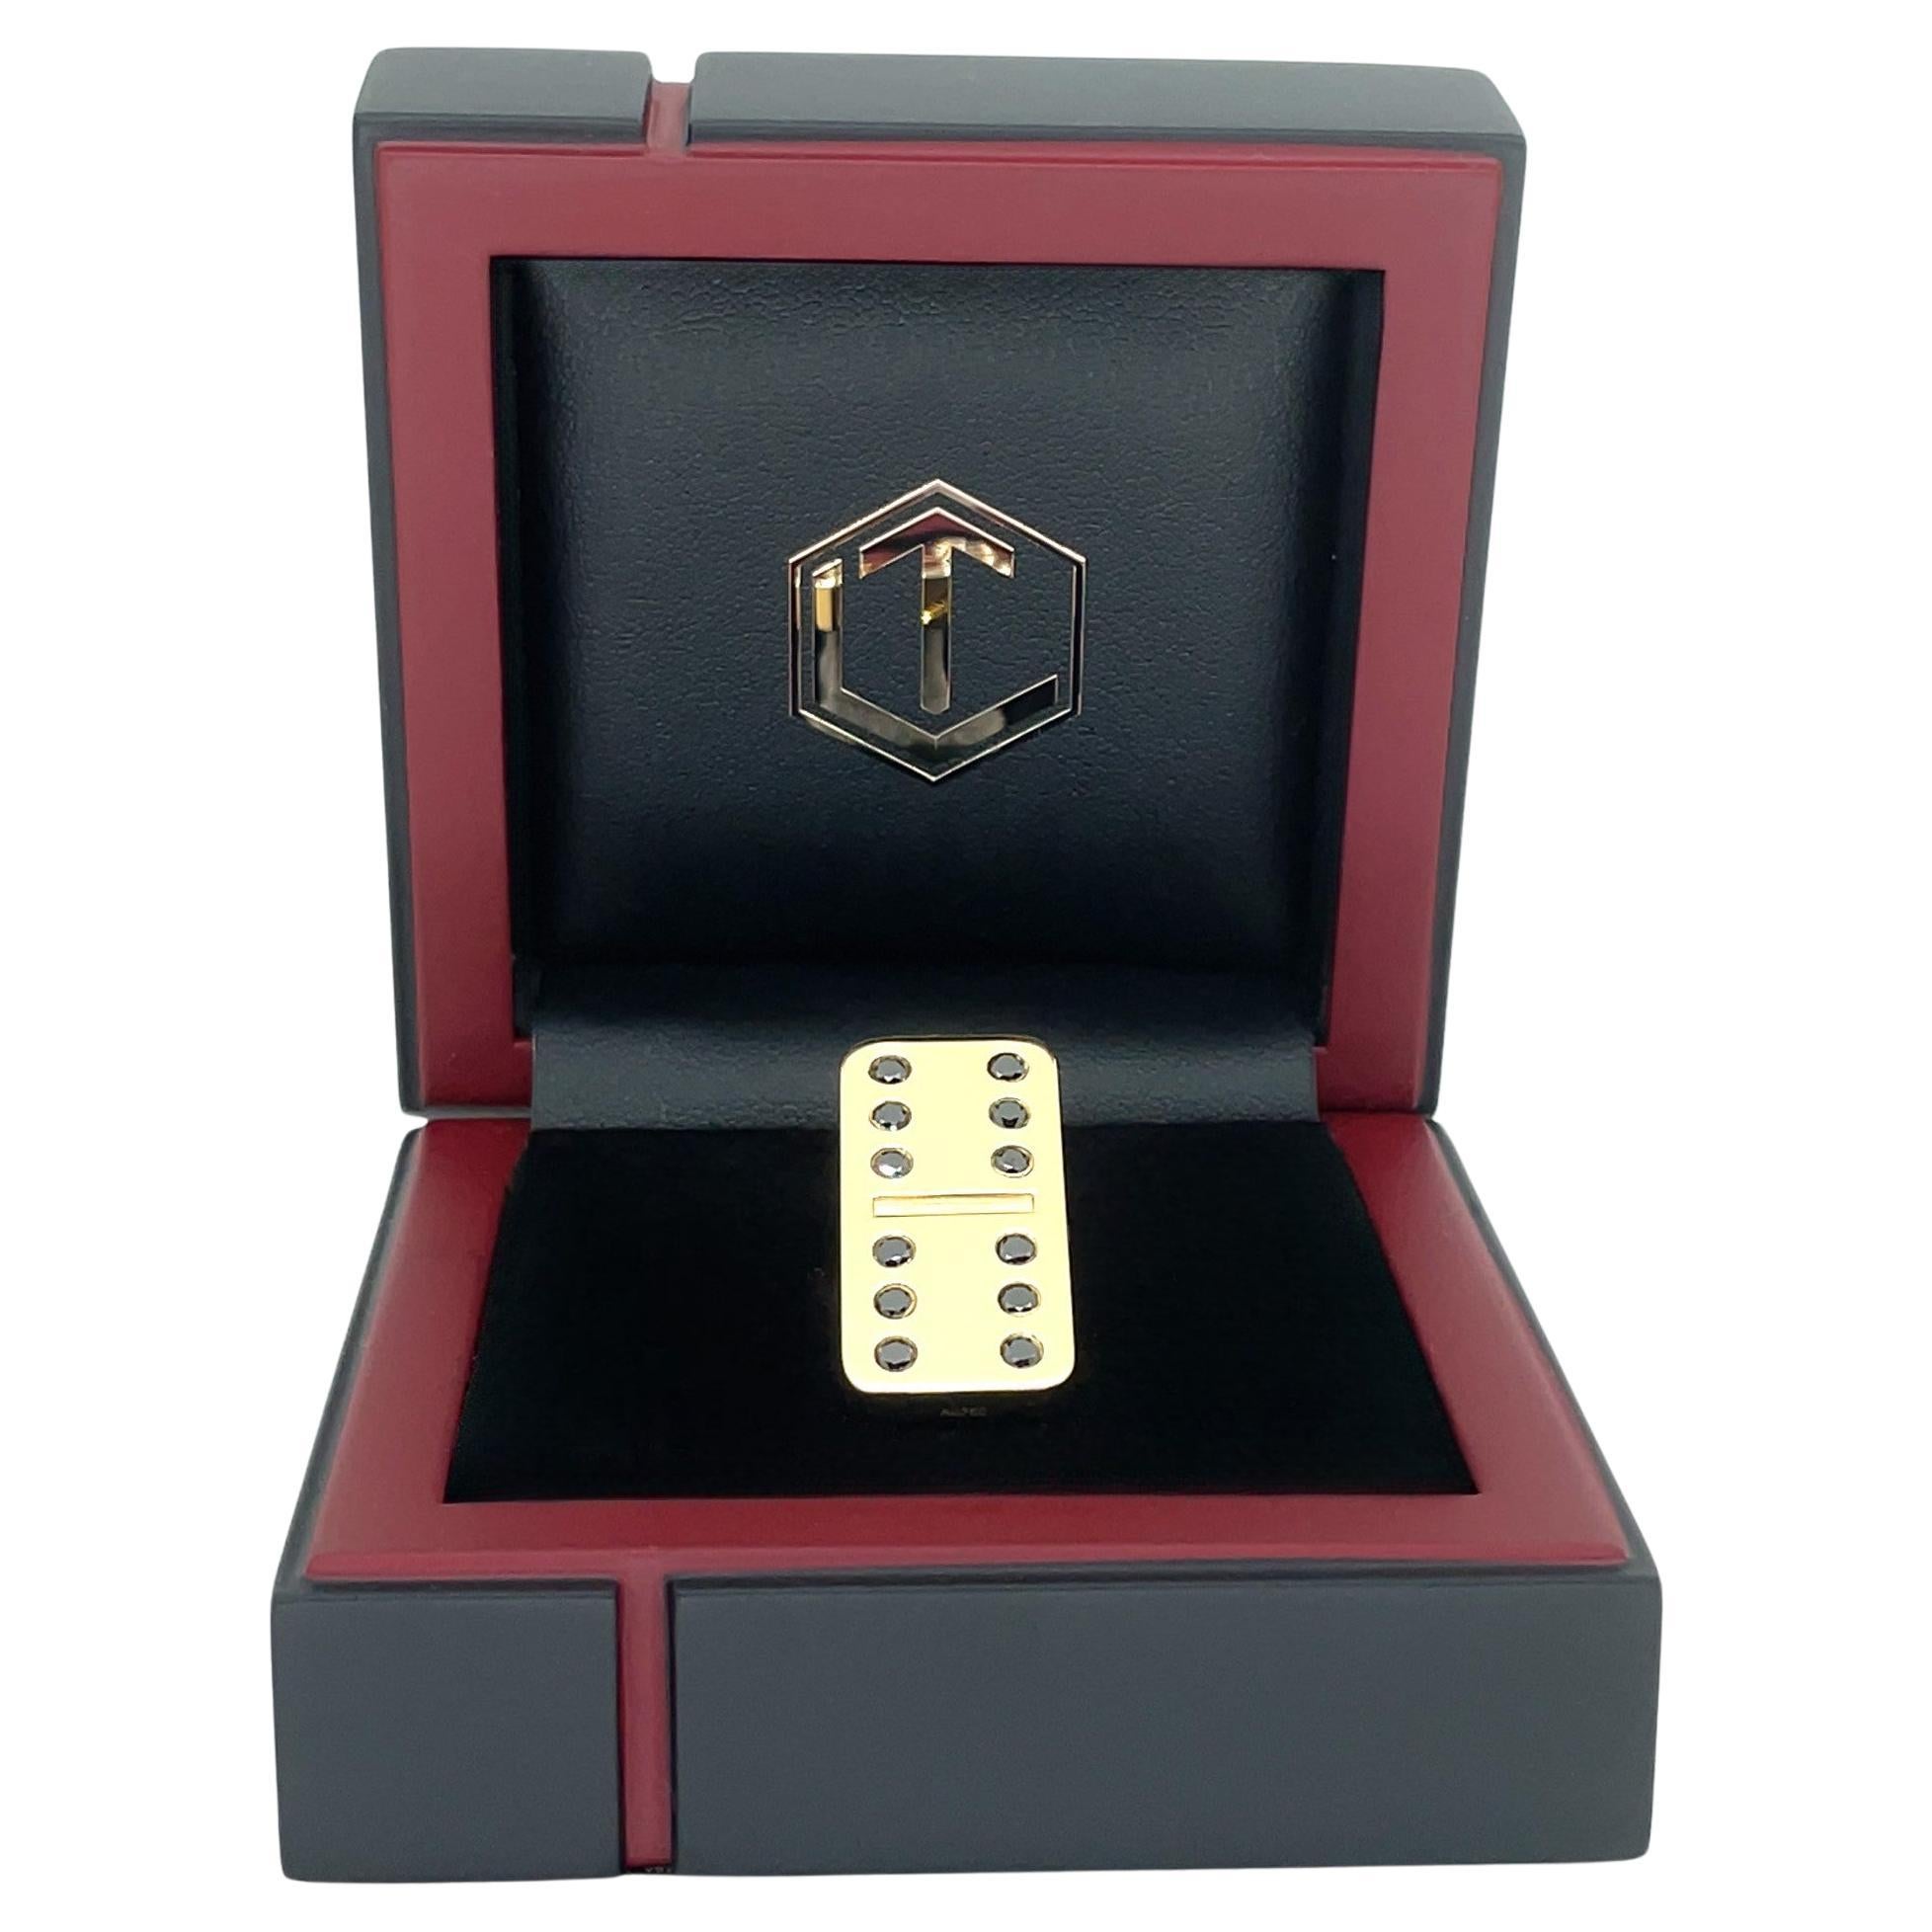 Der imposante Dominostein ist aus 18 Karat Gold gefertigt, vollmassiv und mit 12 schwarzen Diamanten im Brillantschliff besetzt.
Mit einem Gesamtgewicht von 25 Gramm, einer Länge von 29 mm, einer Breite von 14 mm und einer Tiefe von 4 mm, ist der